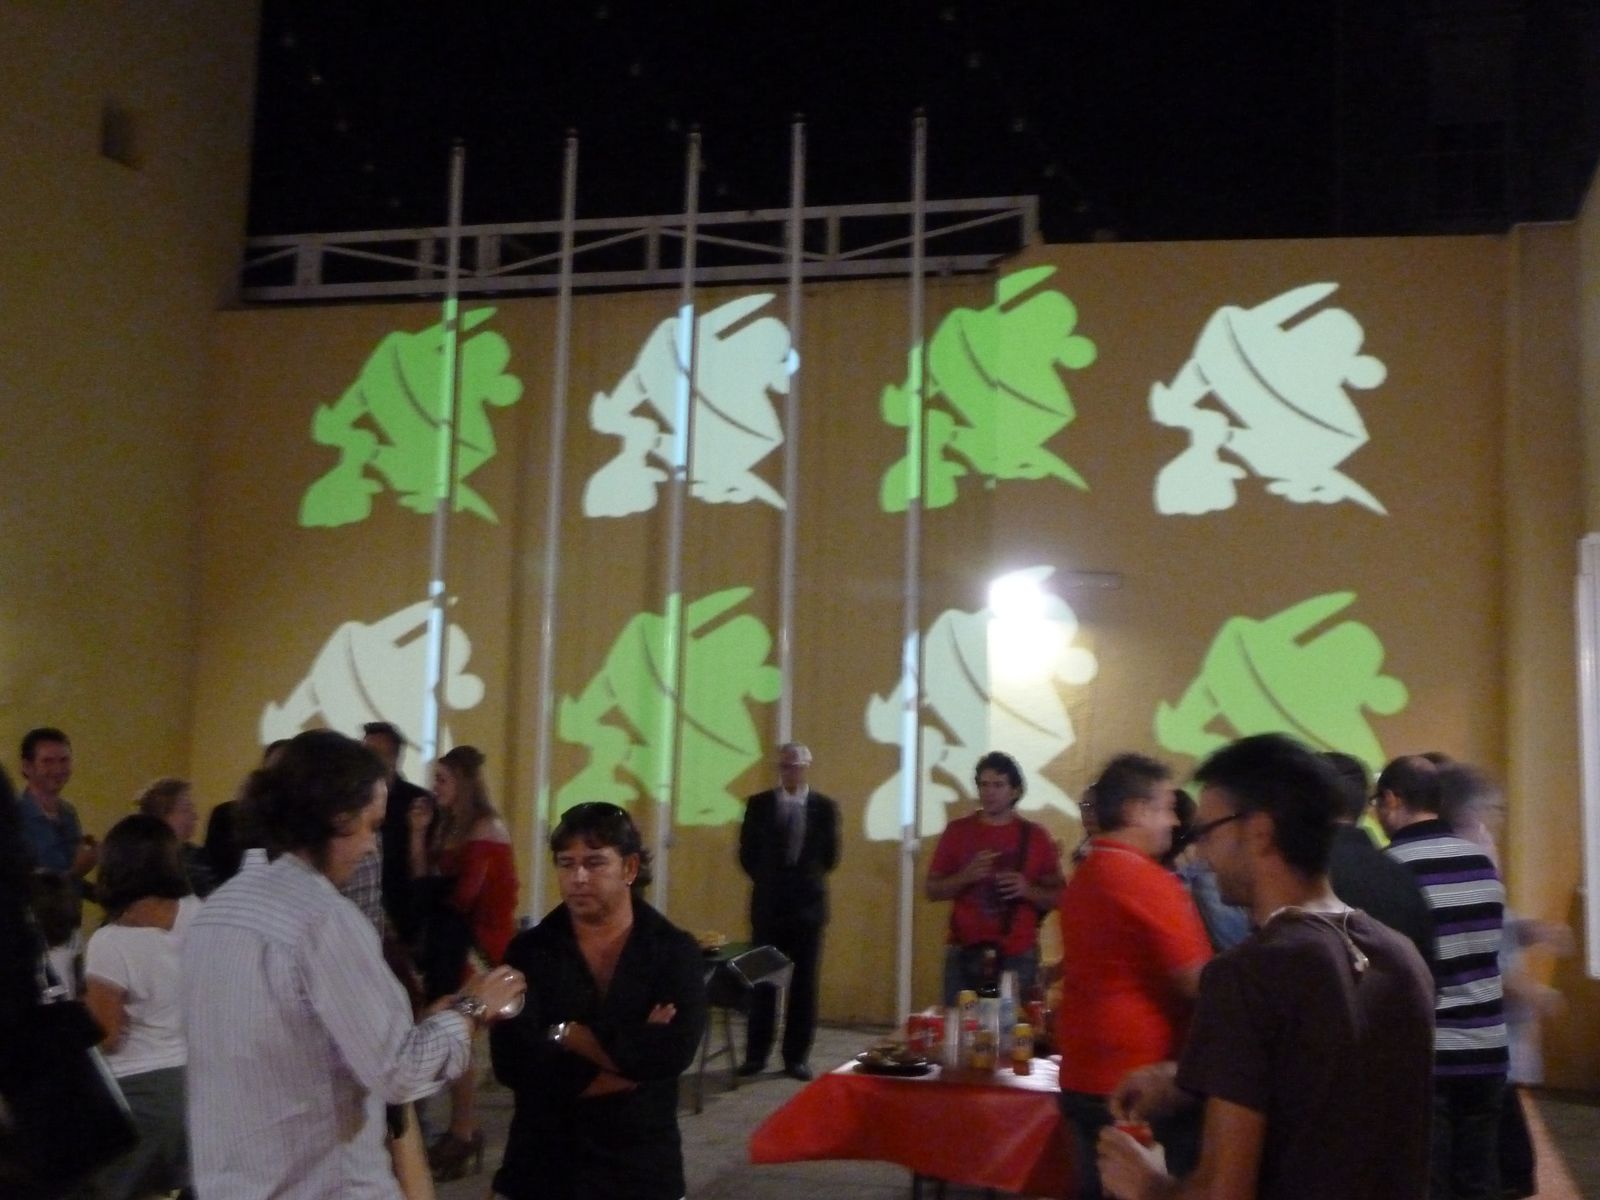 Exposición Contrabandista "Historia de una comparsa" año 2012